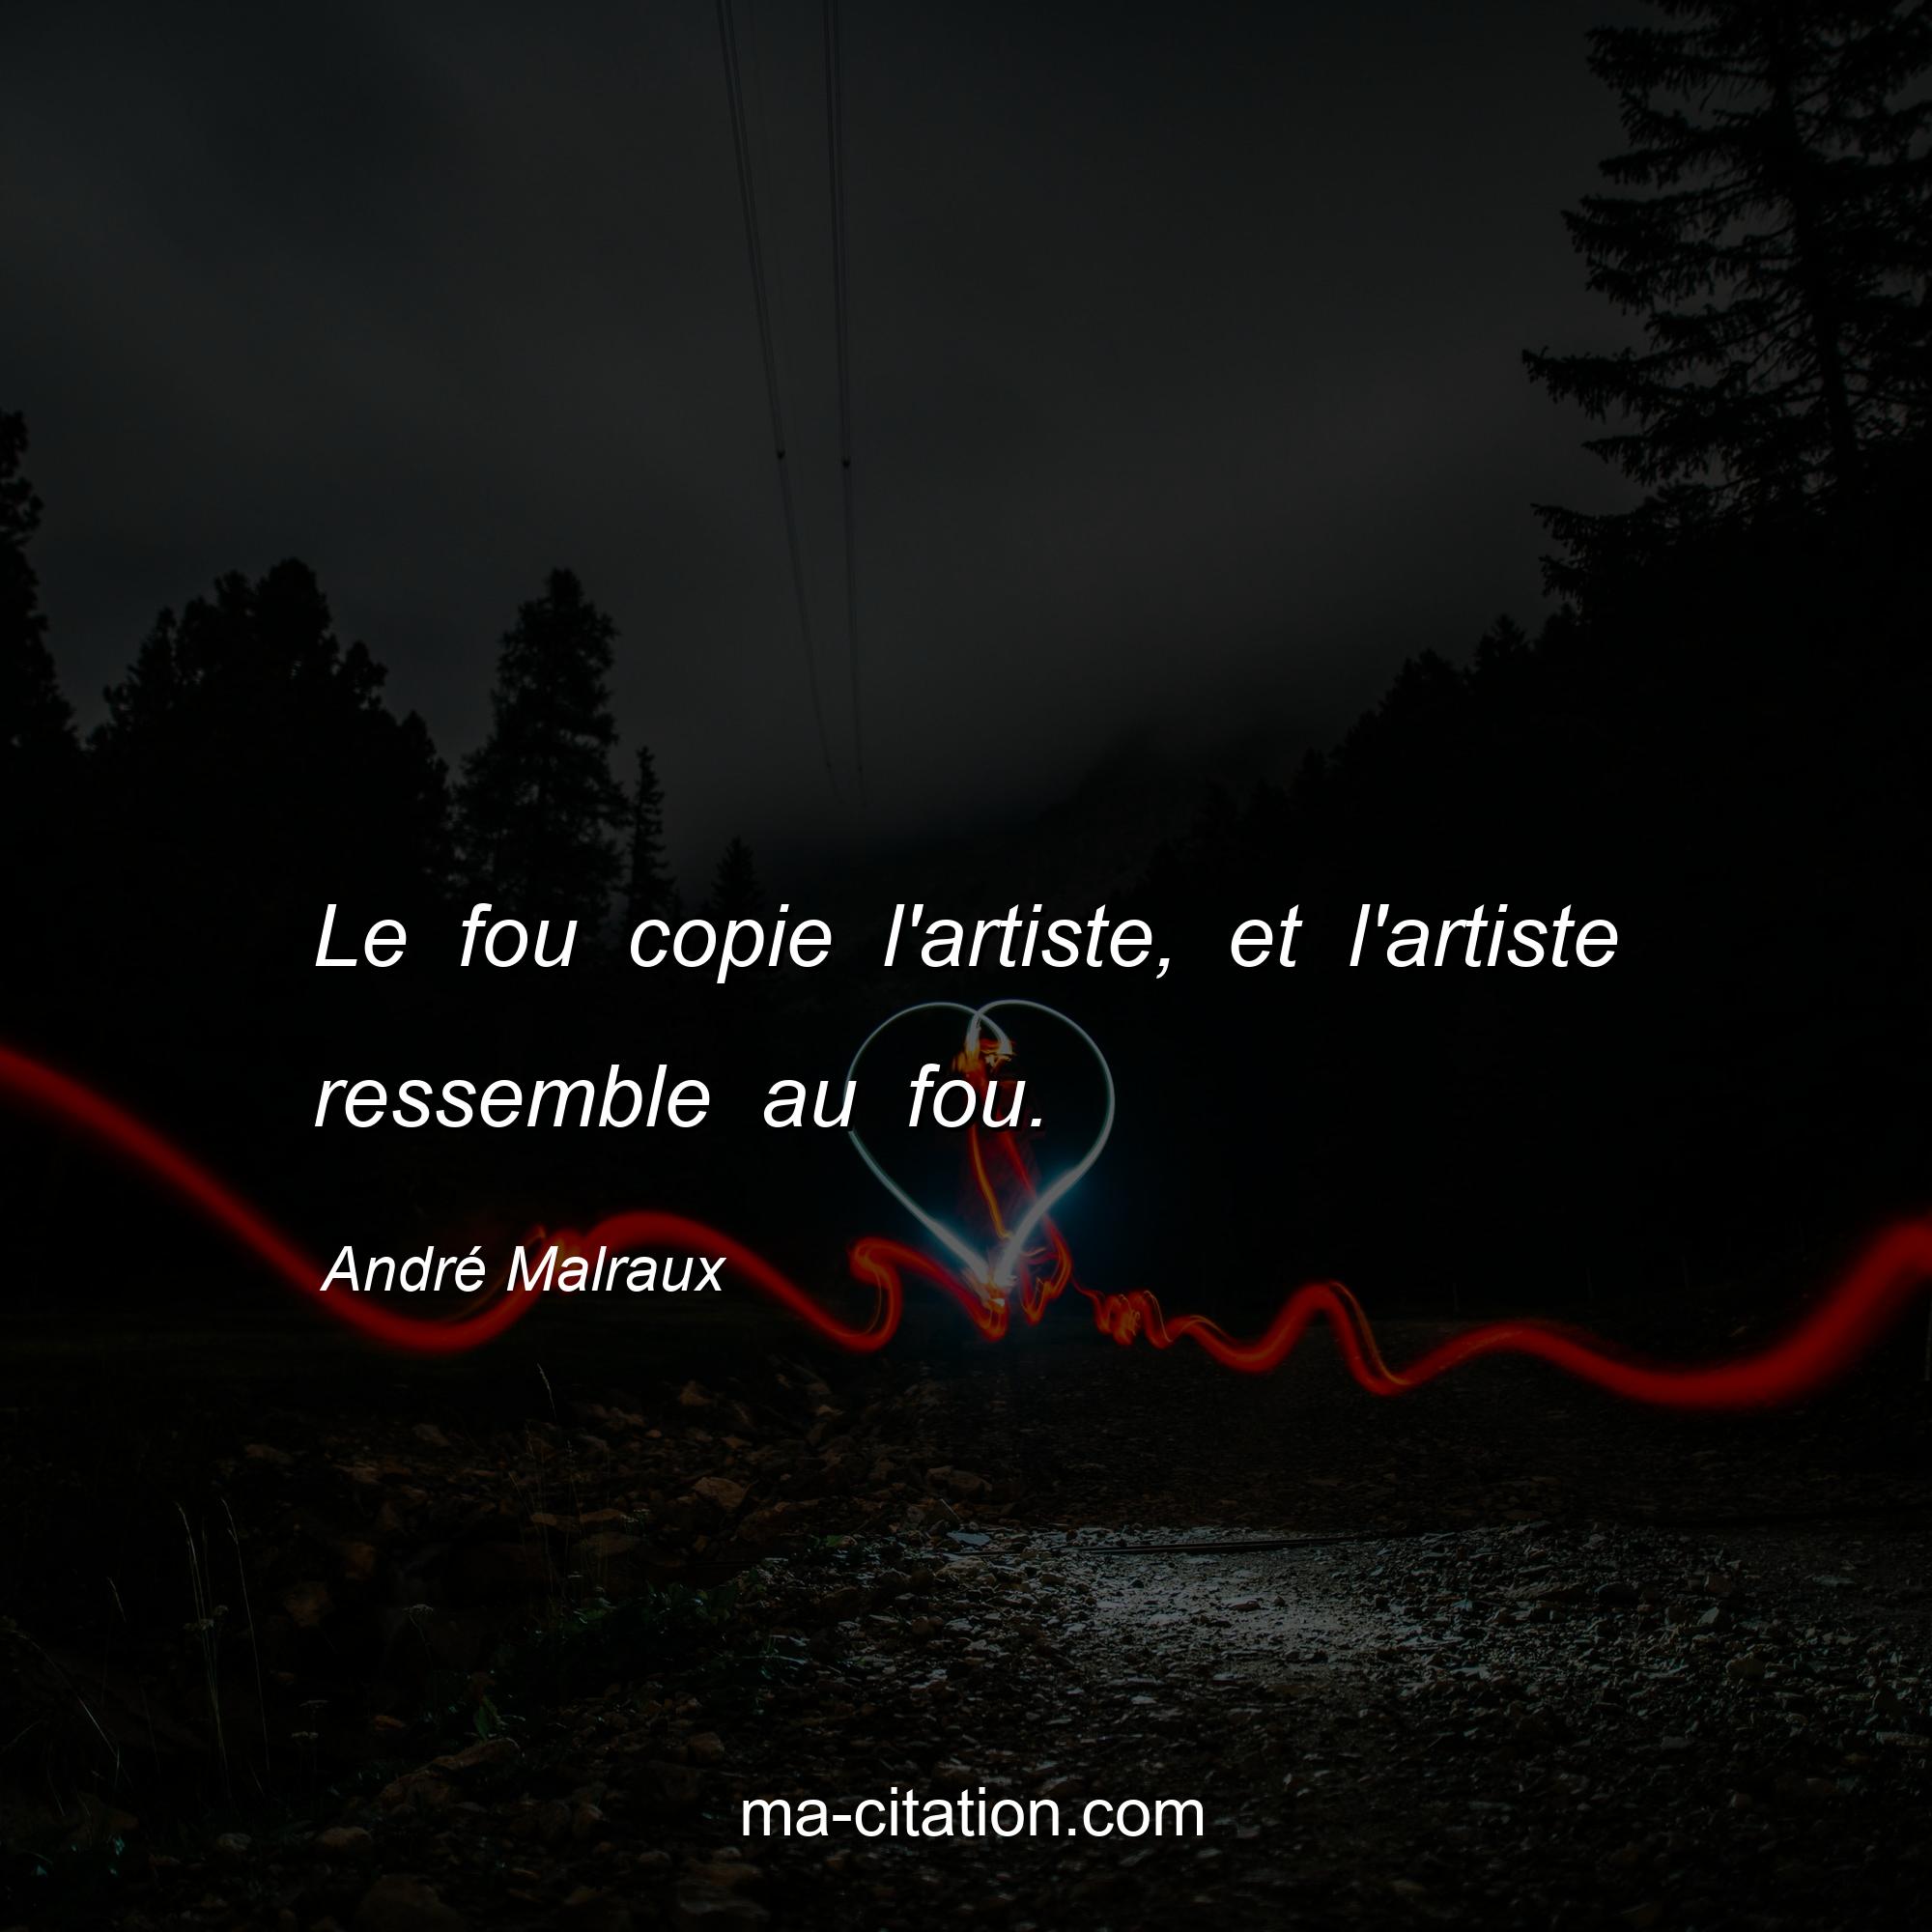 André Malraux : Le fou copie l'artiste, et l'artiste ressemble au fou.